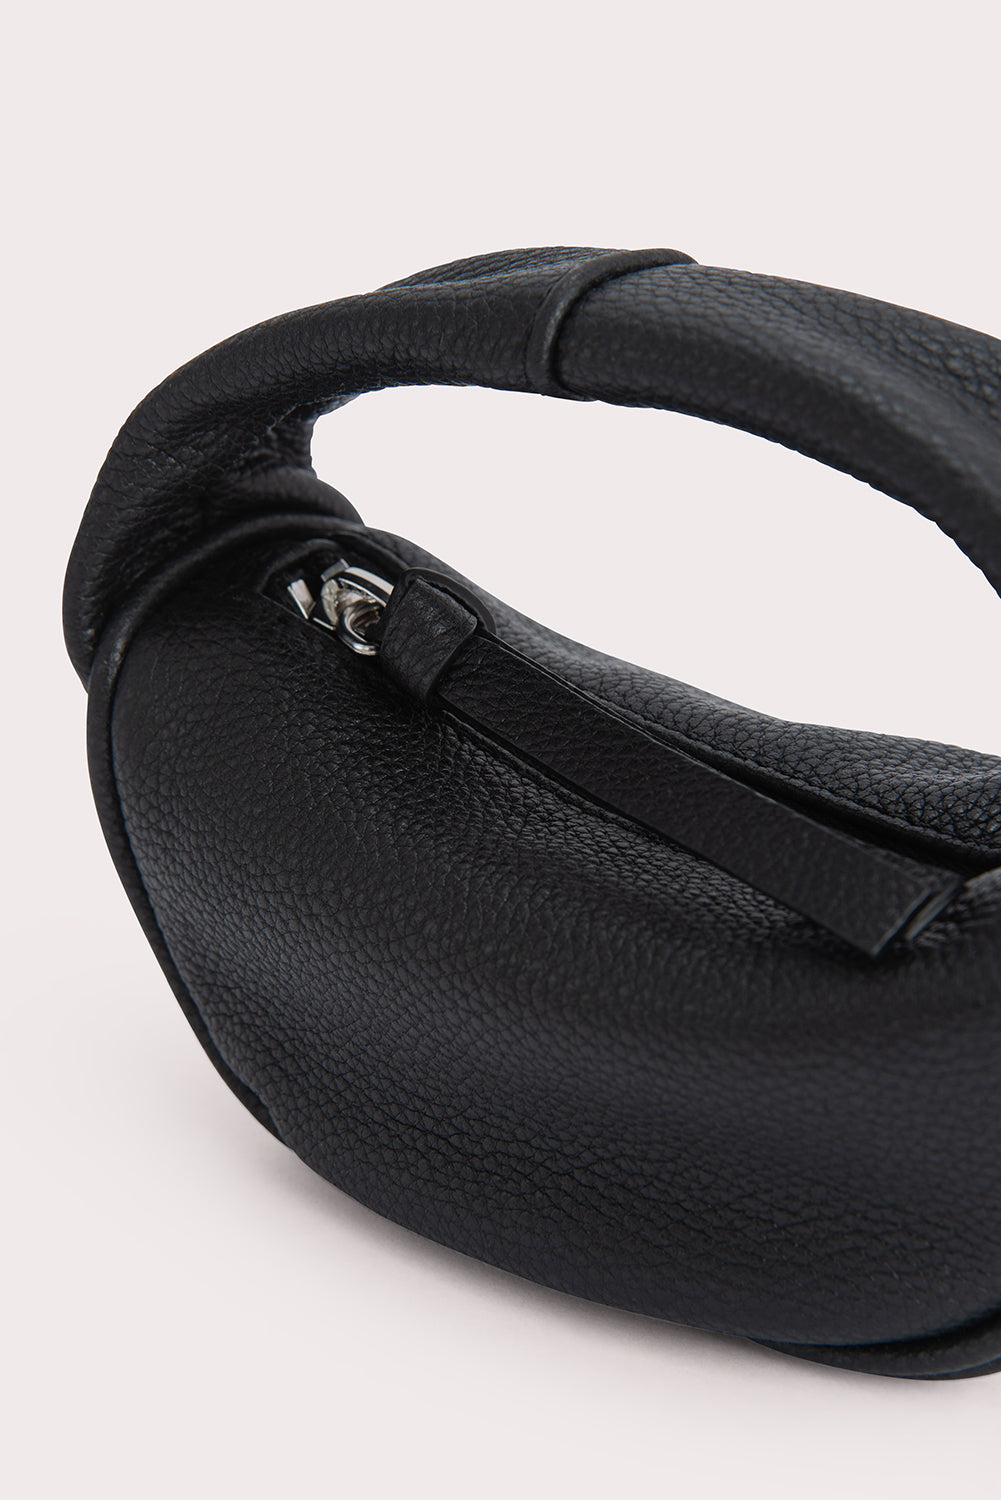 Micro Cush Black Small Grain Calf Leather – BY FAR